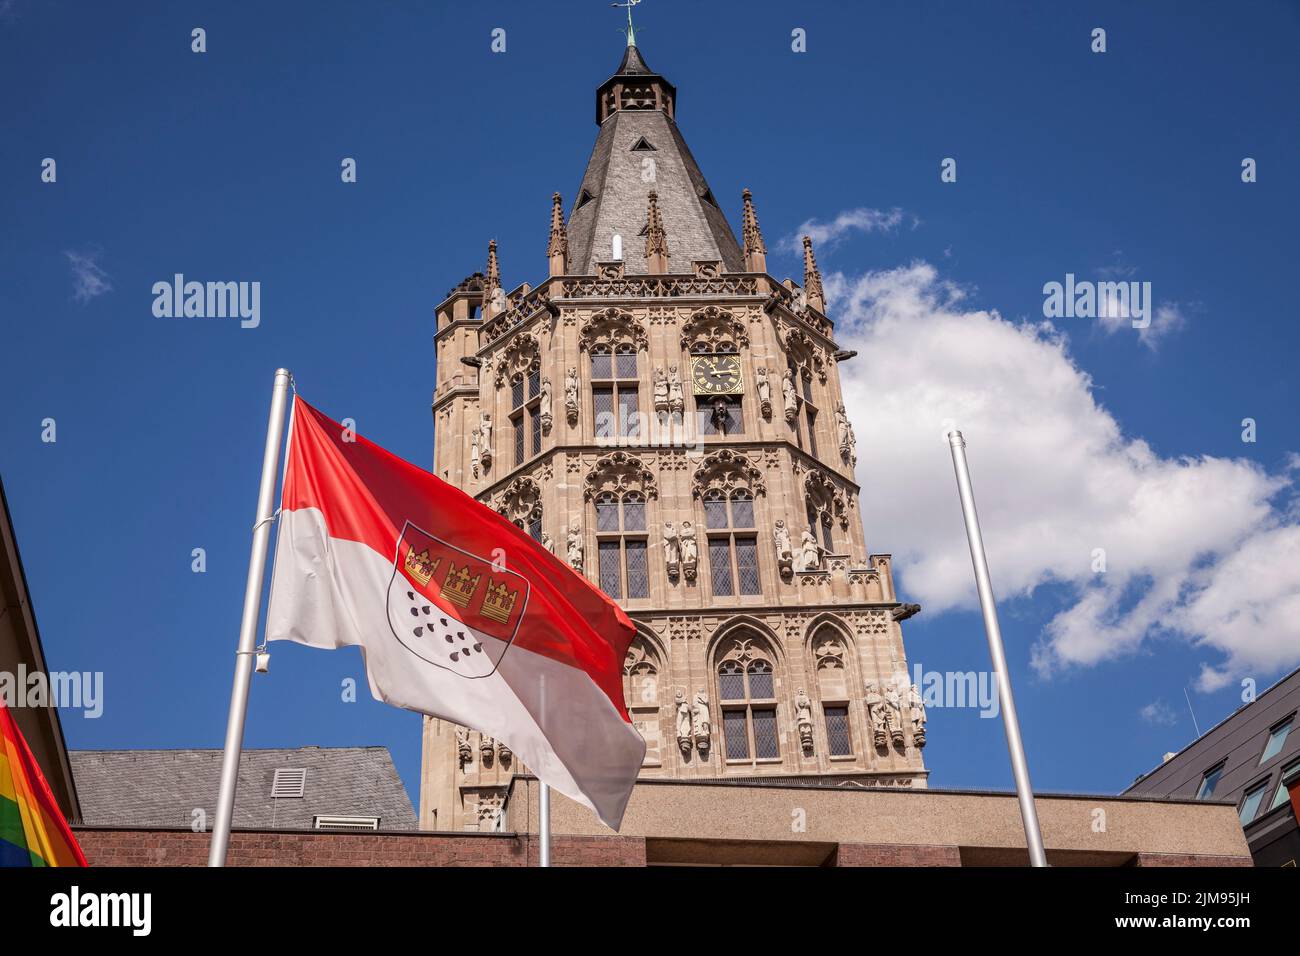 Le drapeau de Cologne devant la tour de l'hôtel de ville historique dans la partie ancienne de la ville, Cologne, Allemagne. Die Koelner Flagge vor dem Turm d Banque D'Images